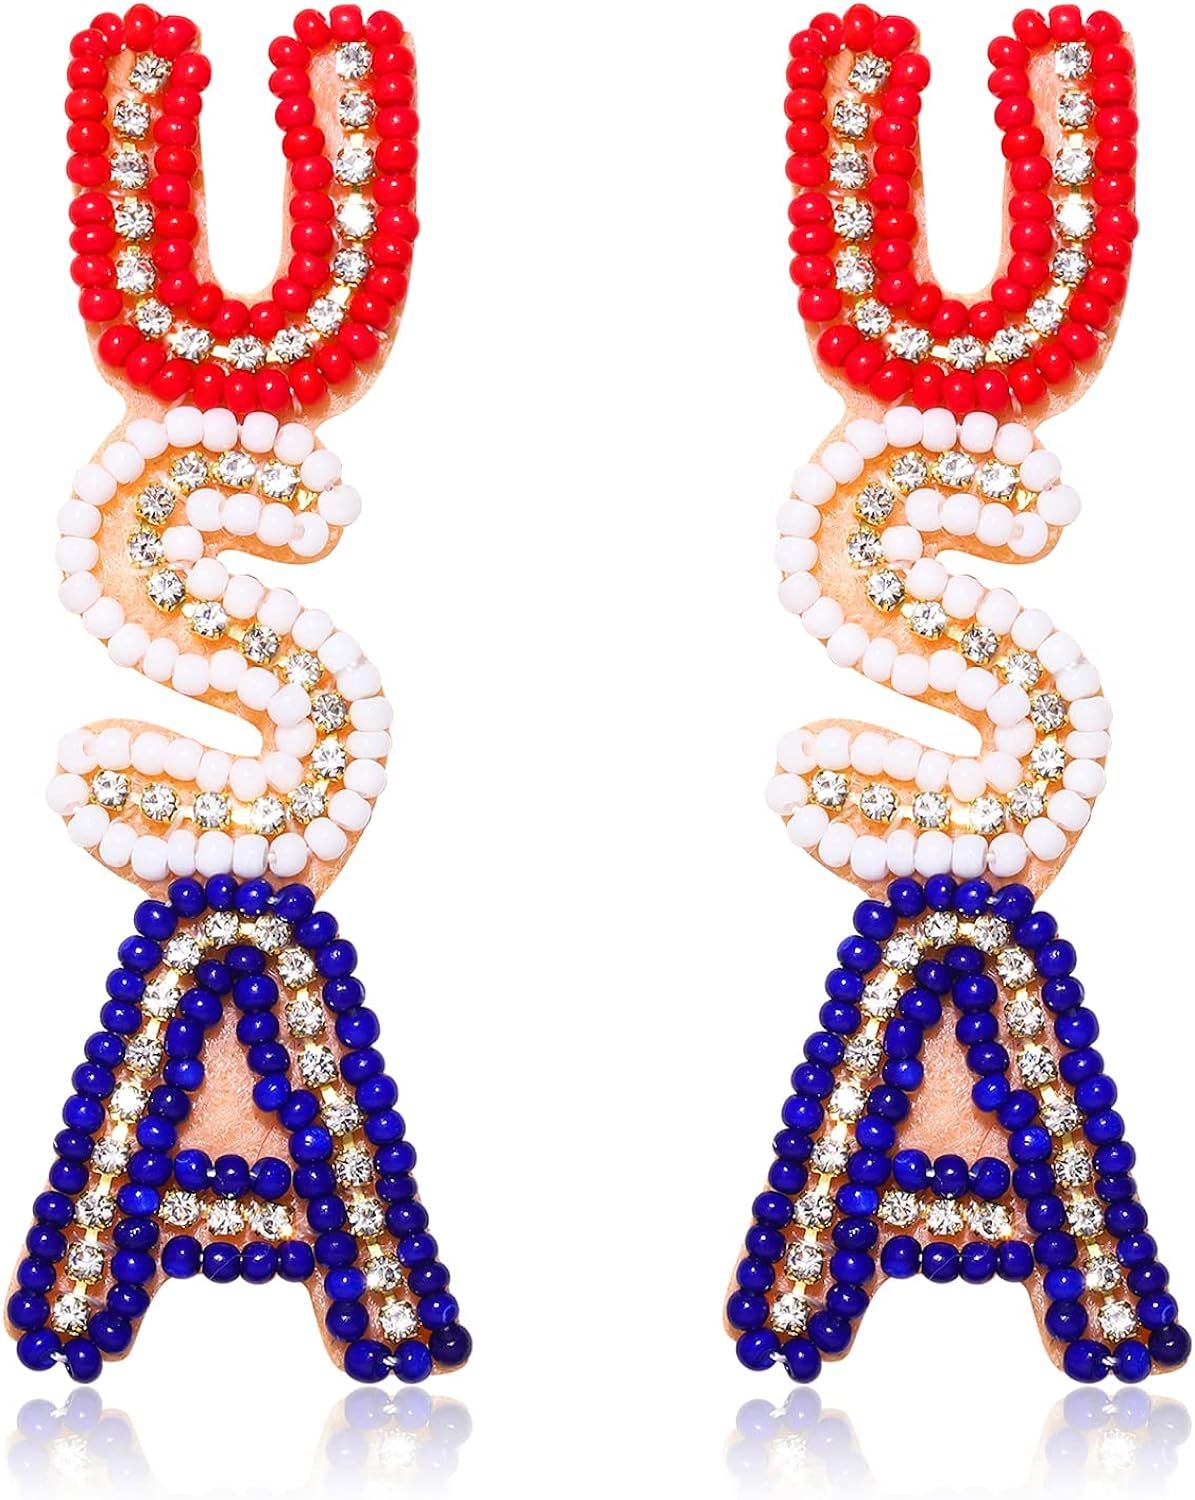 American Flag Earrings 4th of July Earrings for Women Beaded Heart Star Flag Dangle Drop Earrings... | Amazon (US)